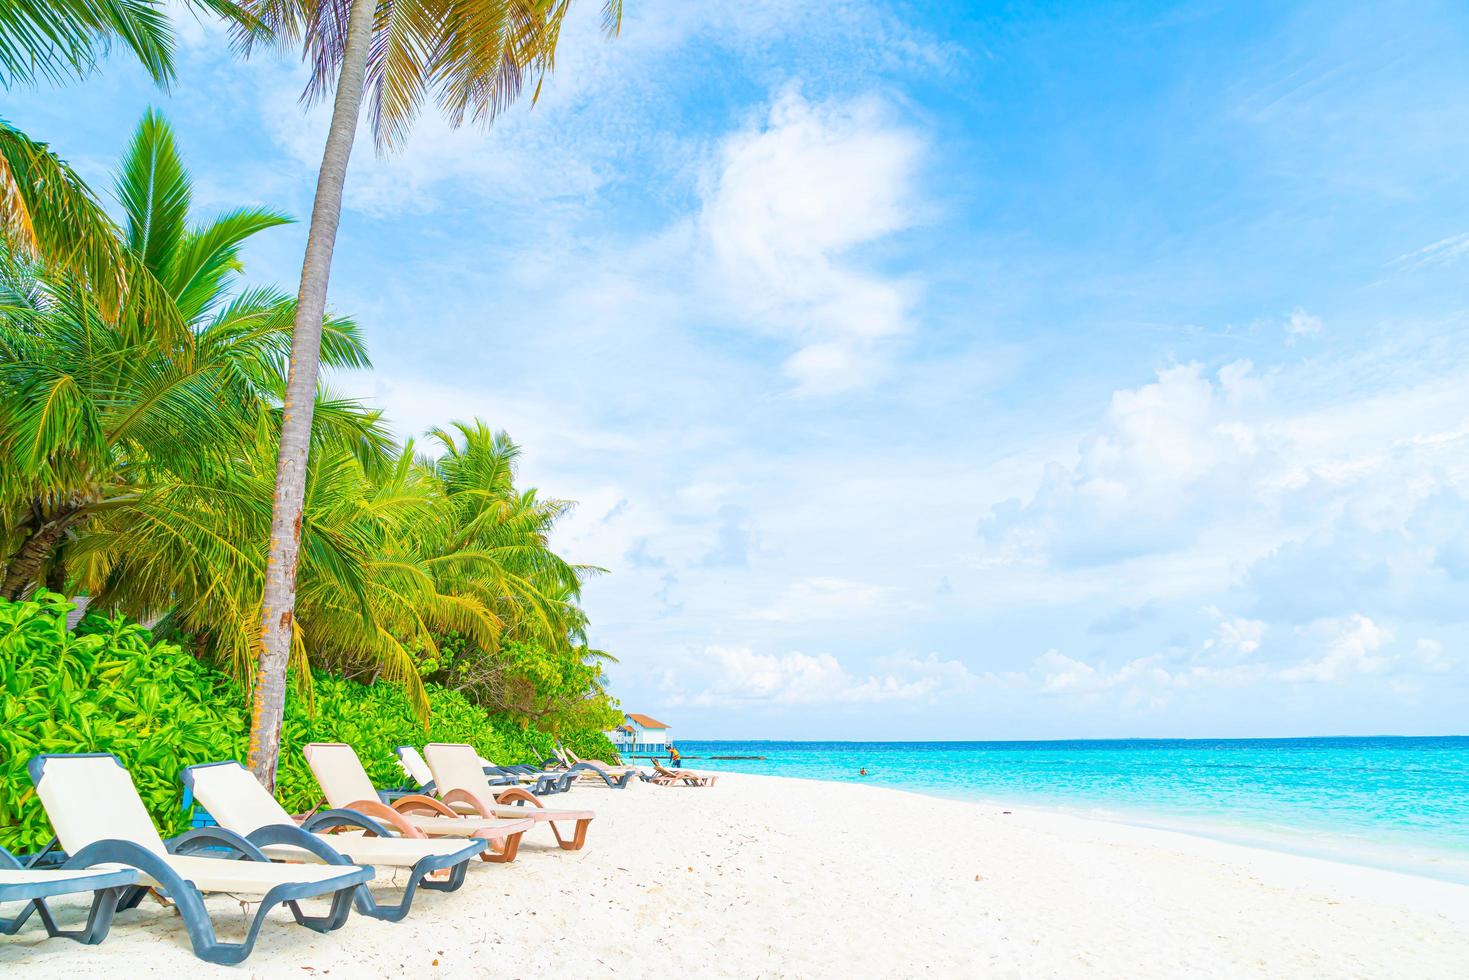 cadeira de praia com ilha tropical resort das Maldivas e mar foto